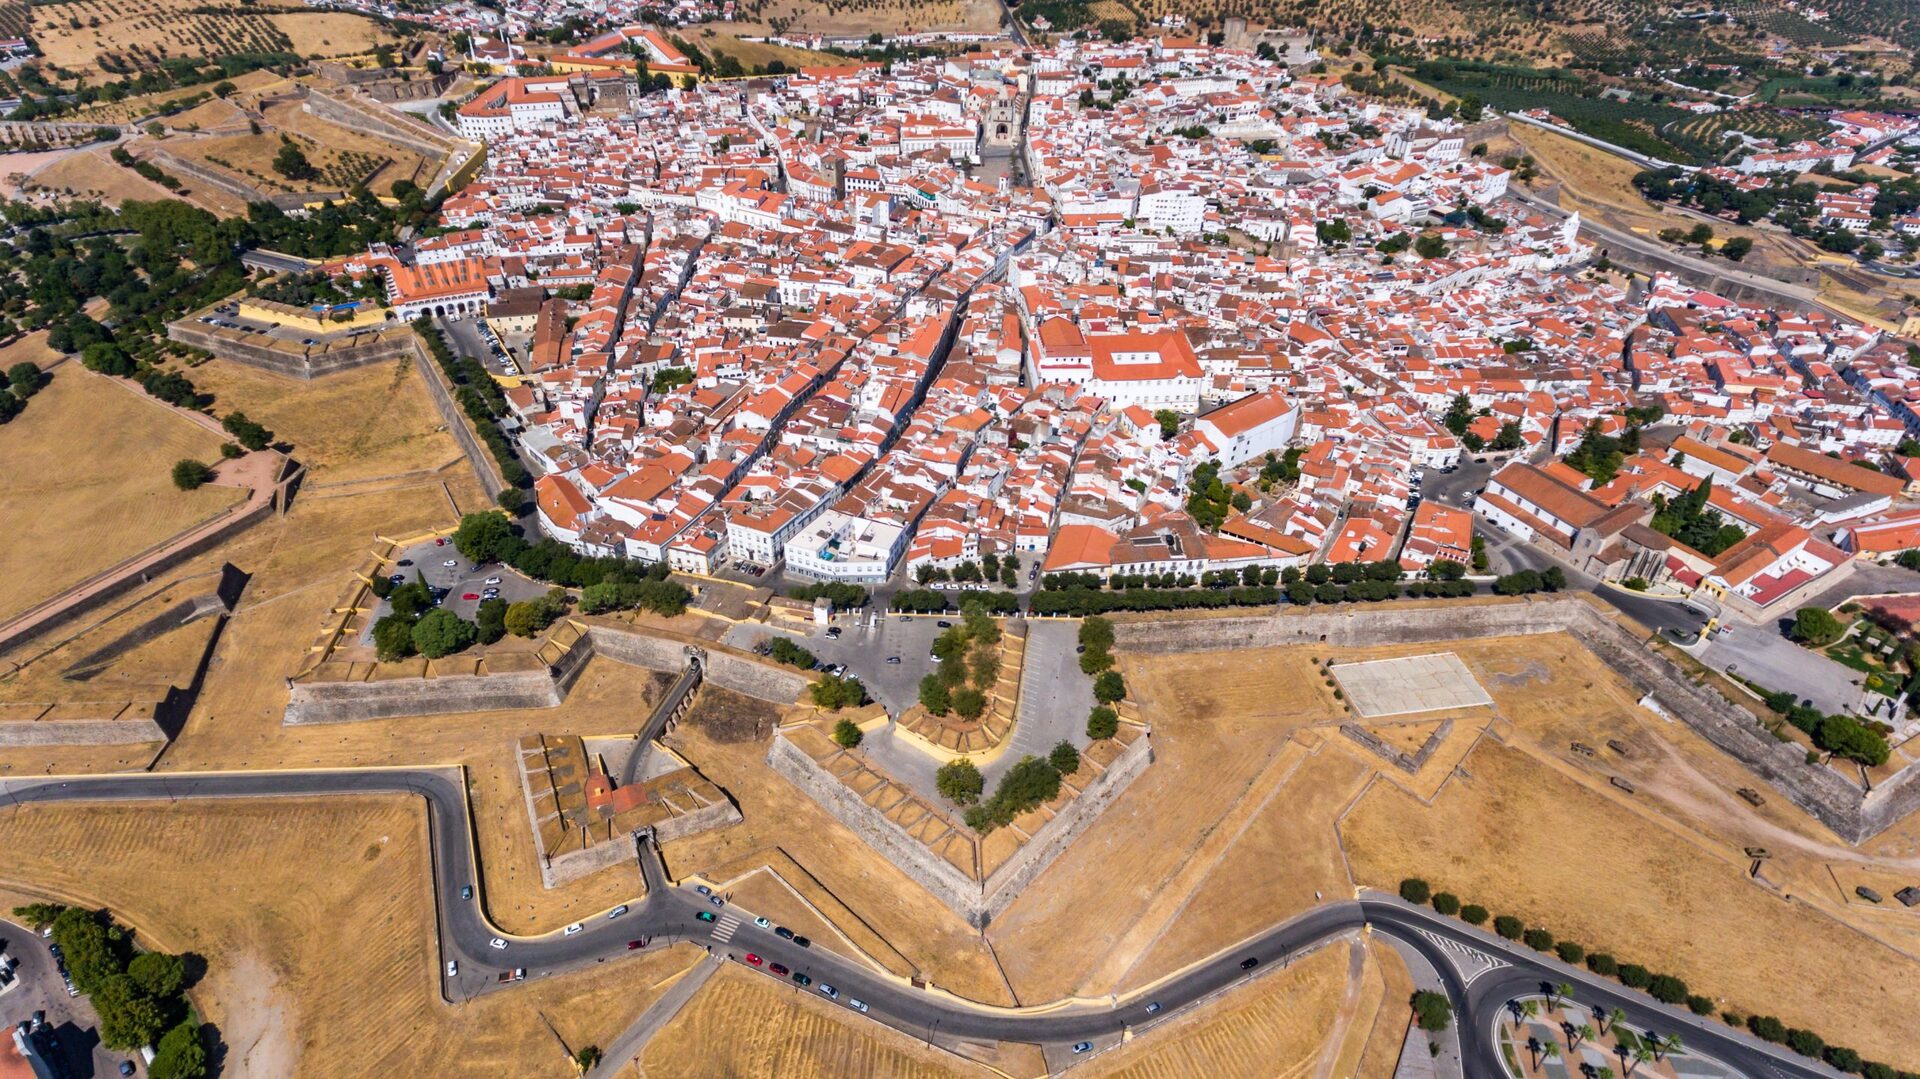 Vista área do vilerejo fortificado de Elvas, no Alentejo, em Portugal